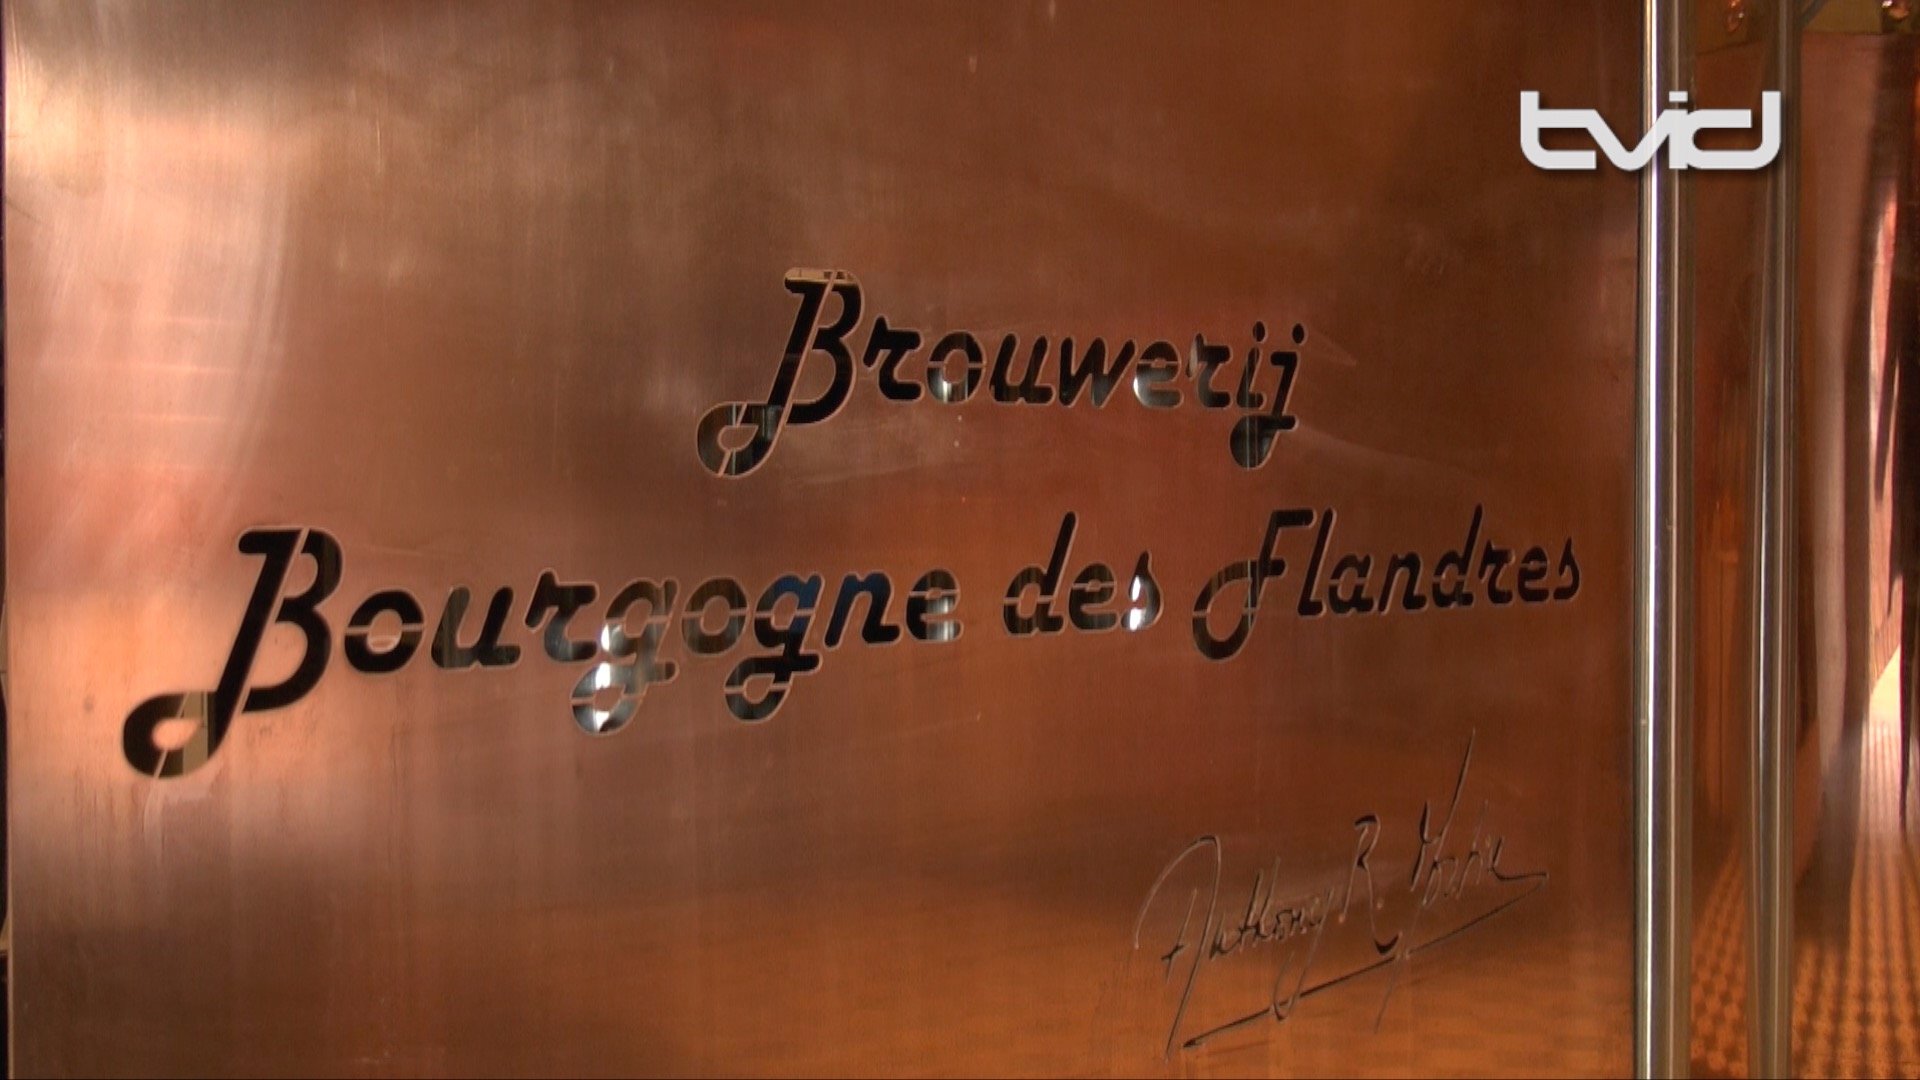 ブルージュにオープンした醸造所「ブルゴーニュ・デ・フランドル」